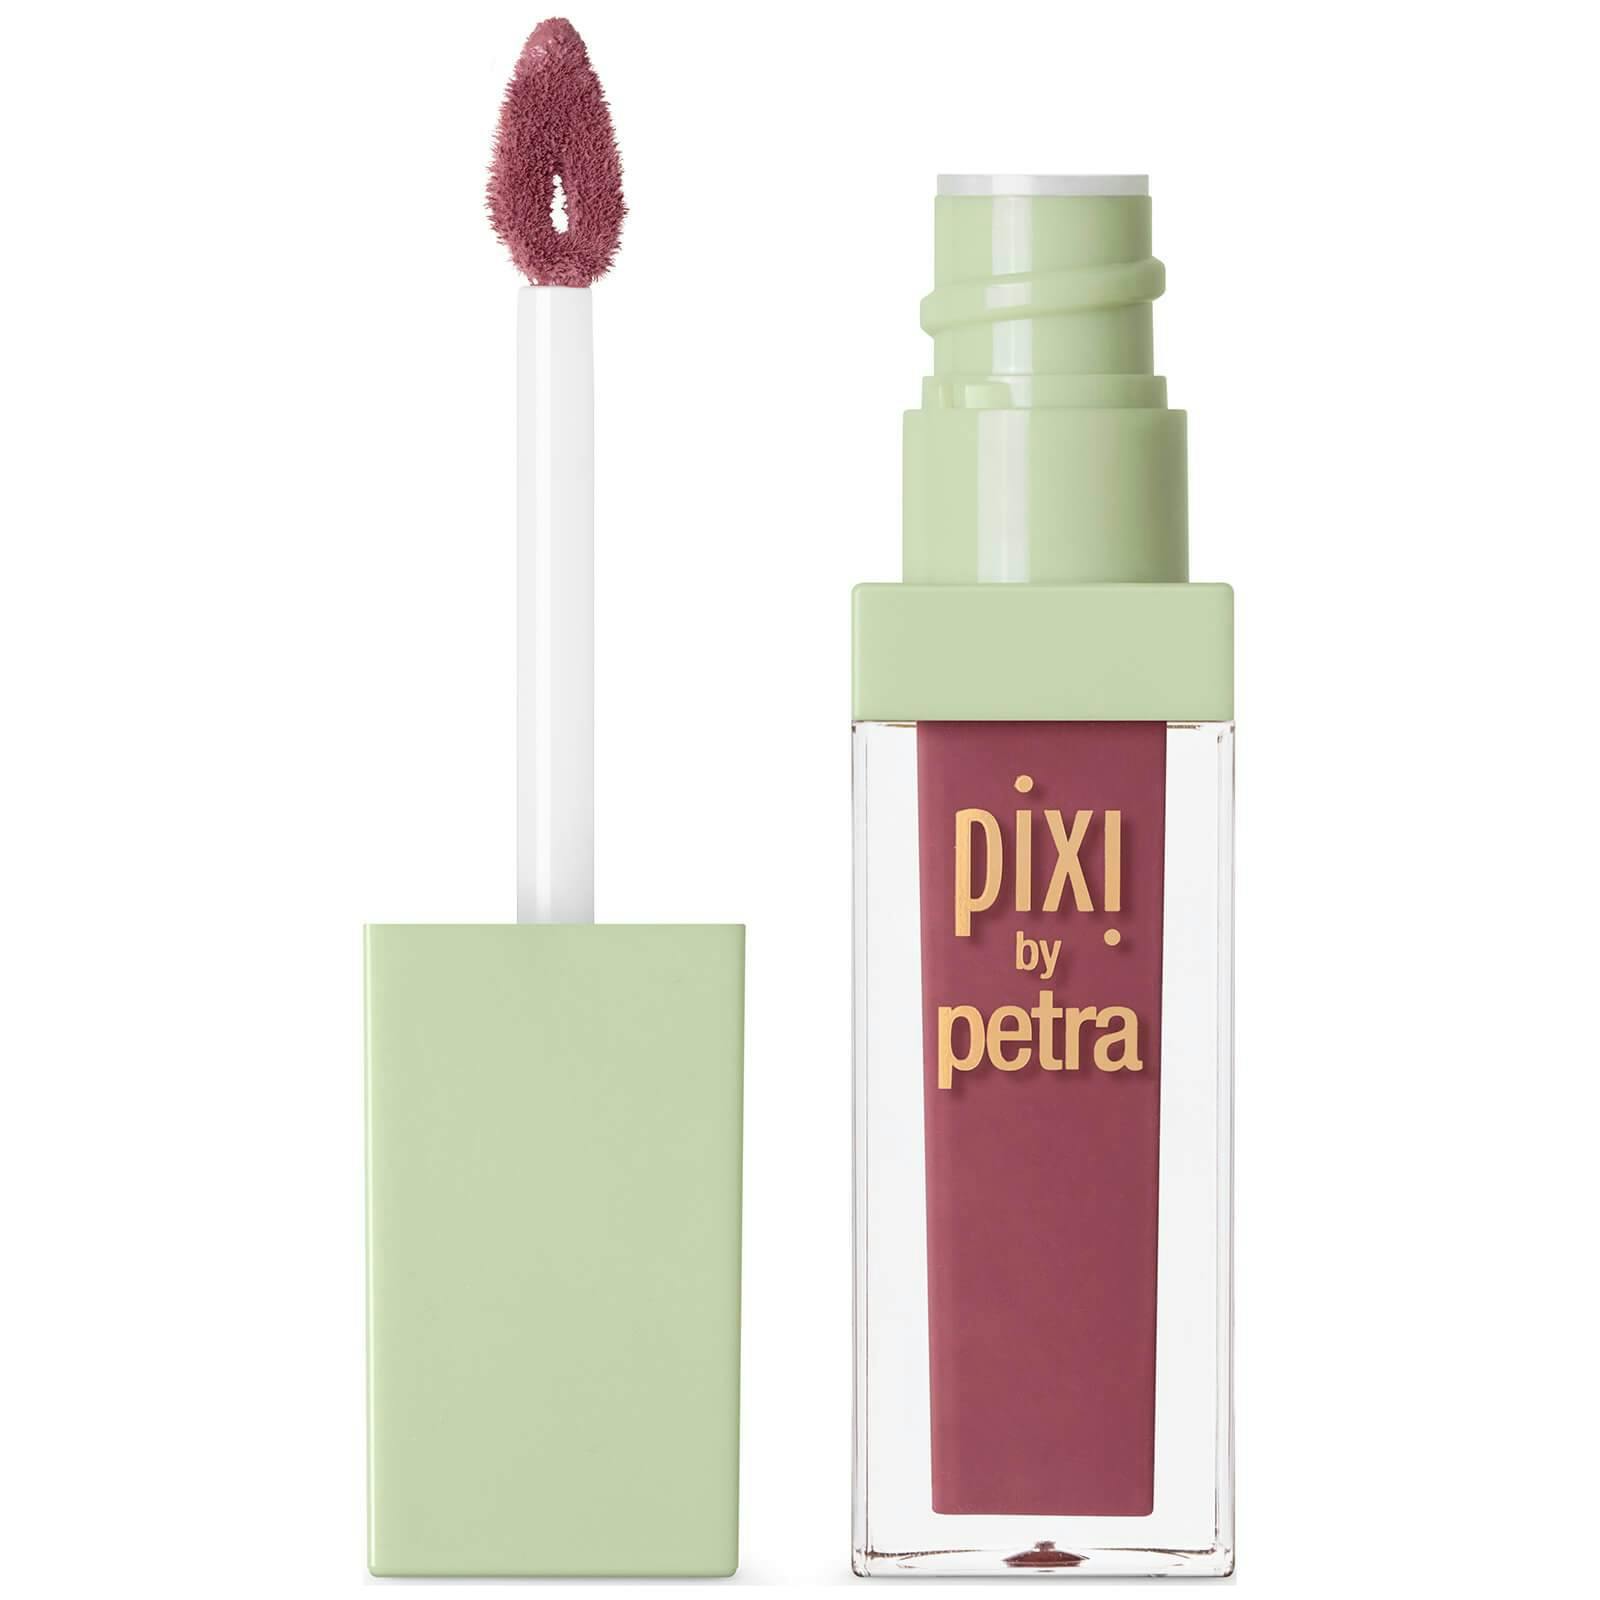 Pixi Matte Last Liquid Lipstick